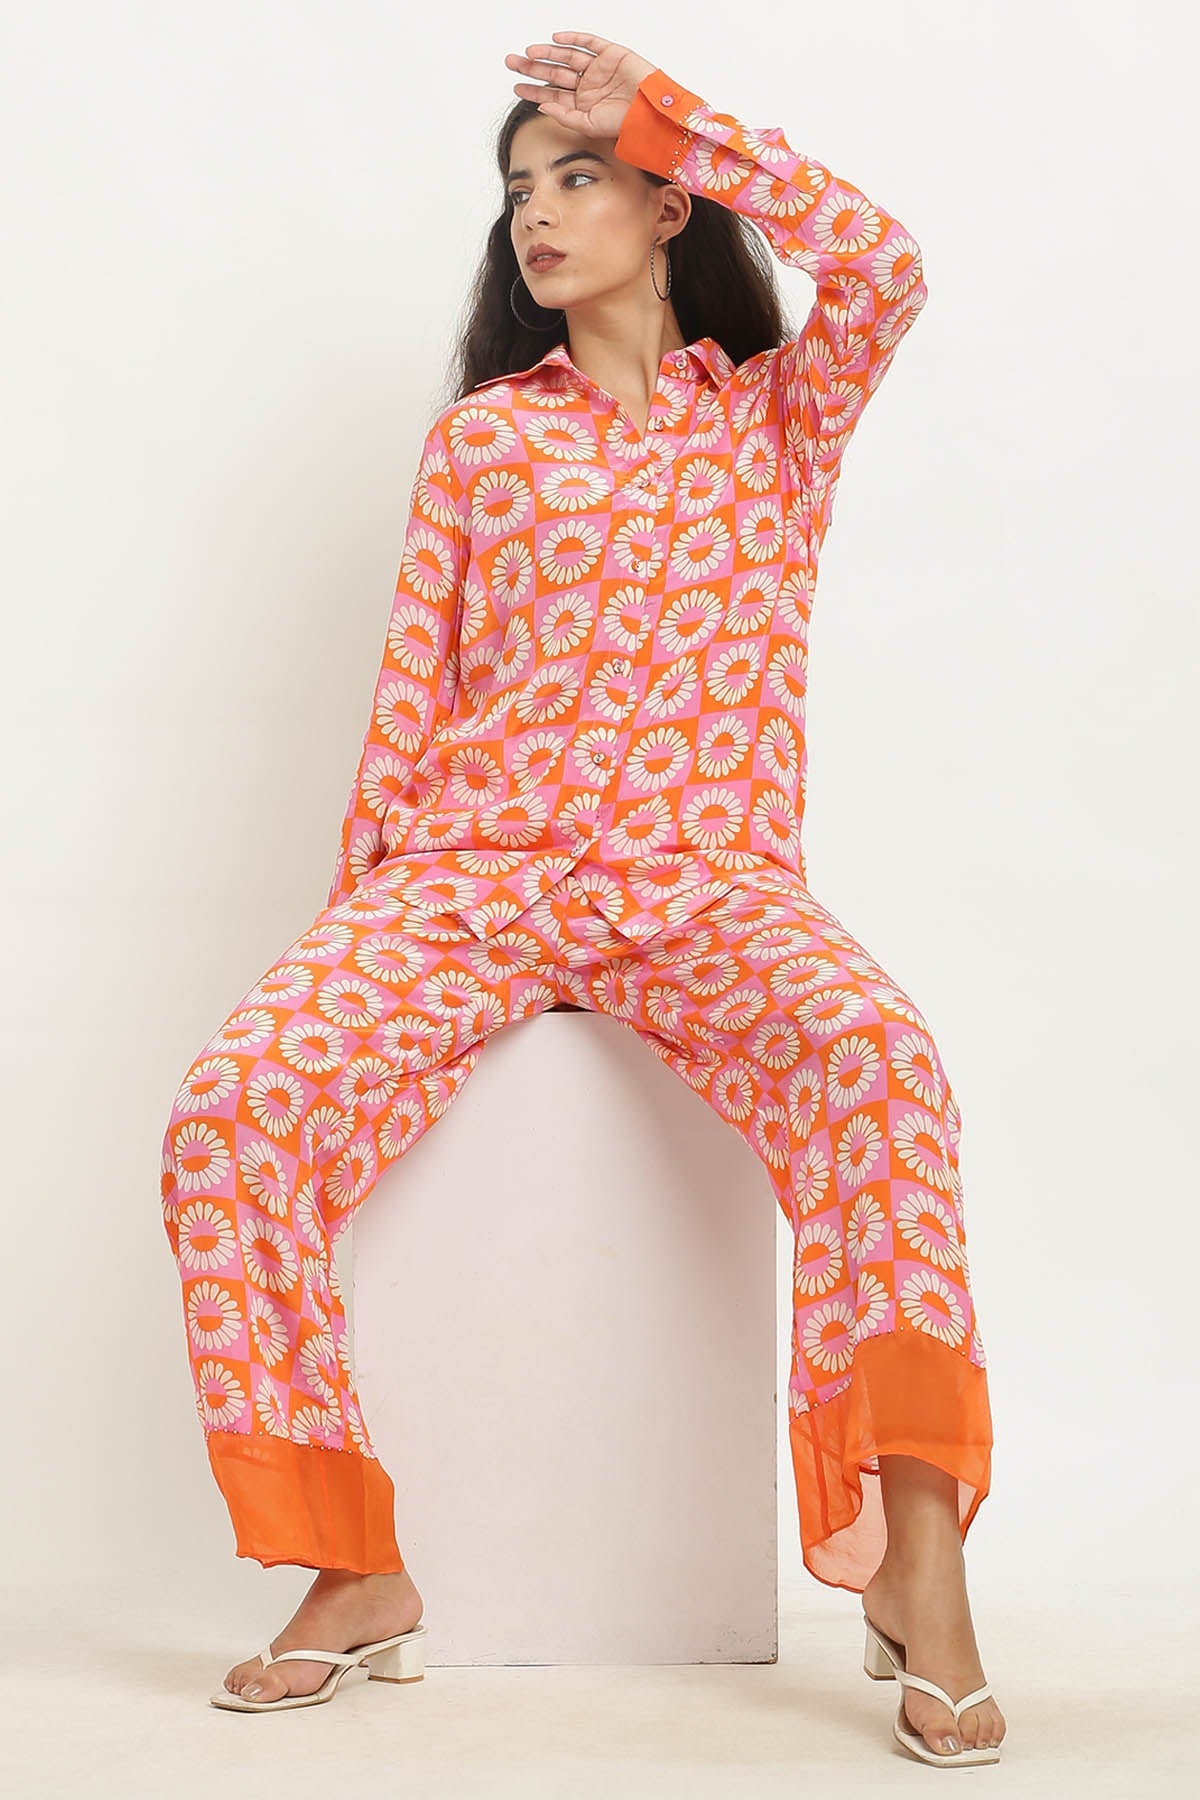 Designer Kusmi Sunshine Chic: Vibrant Orange Crepe Co-ord For Women at ScrollnShops